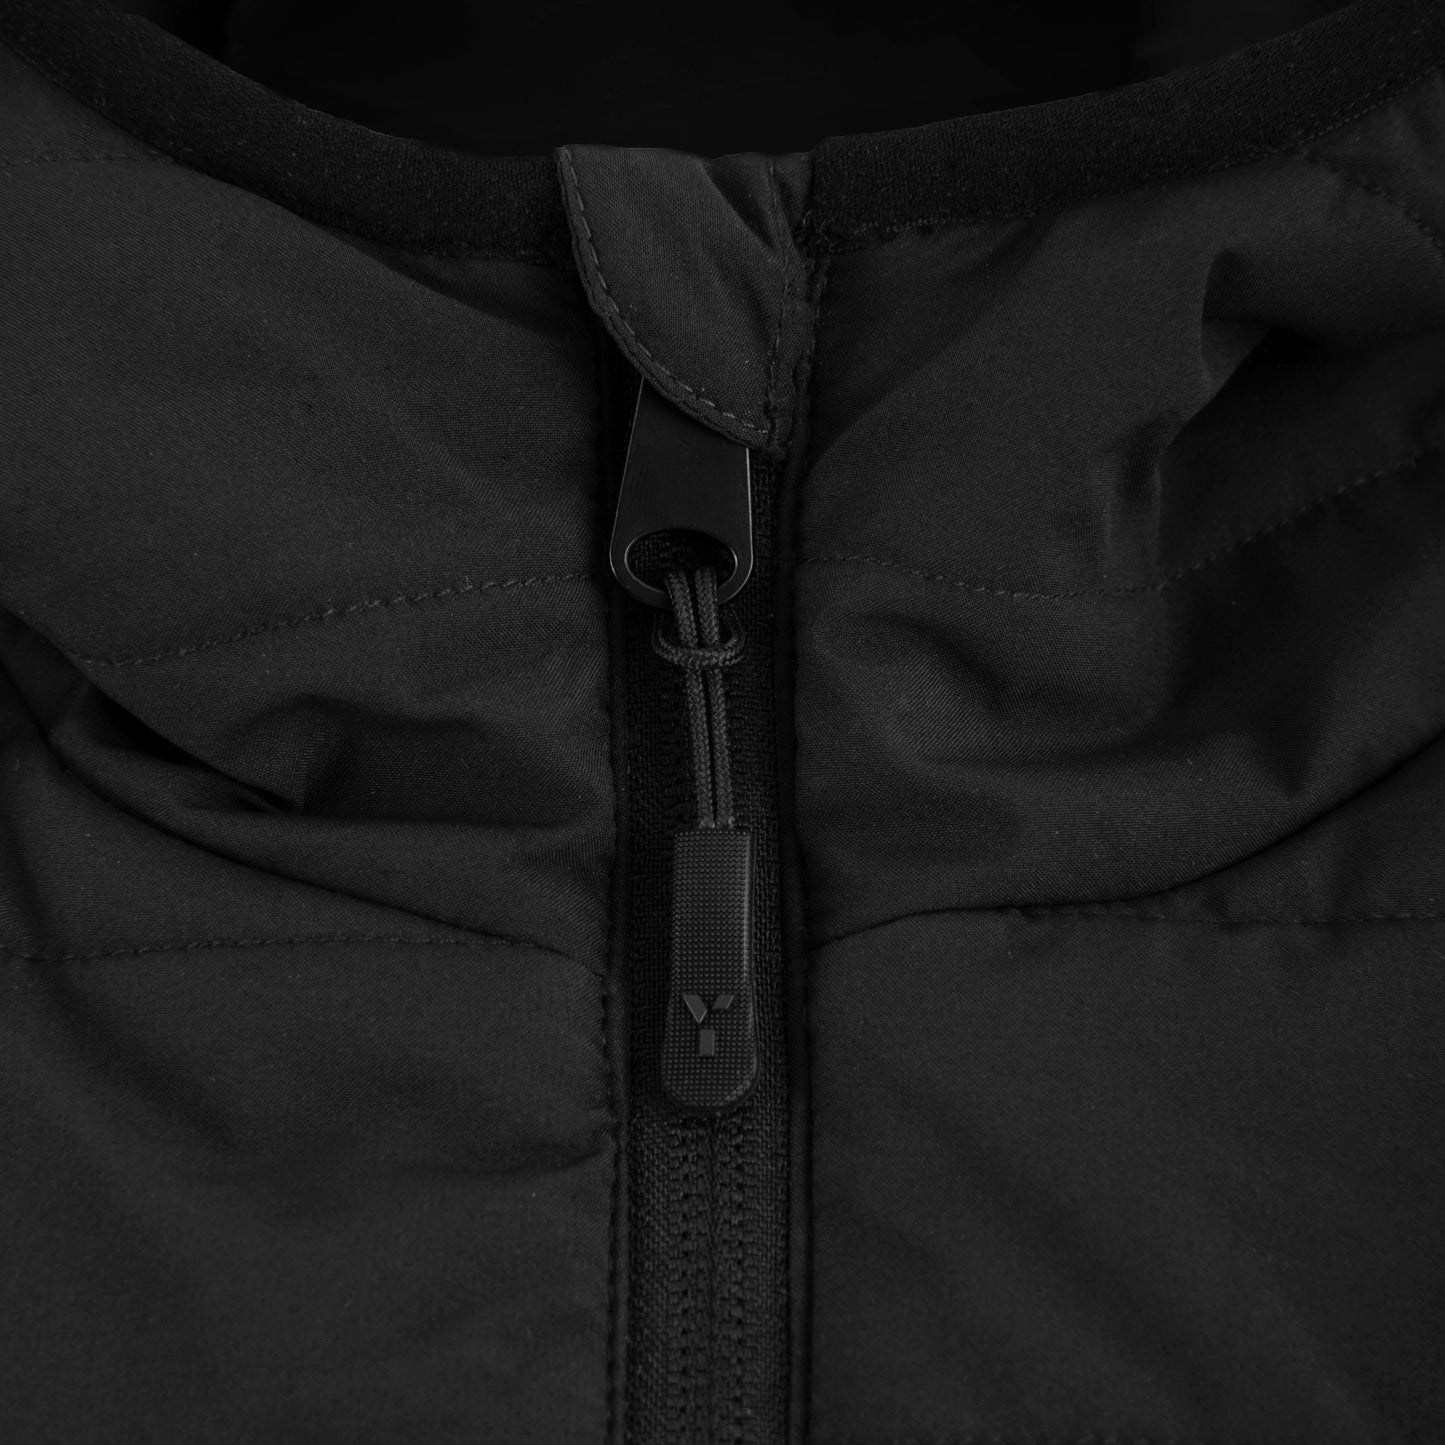 Southgate HC - Padded Jacket Unisex Black